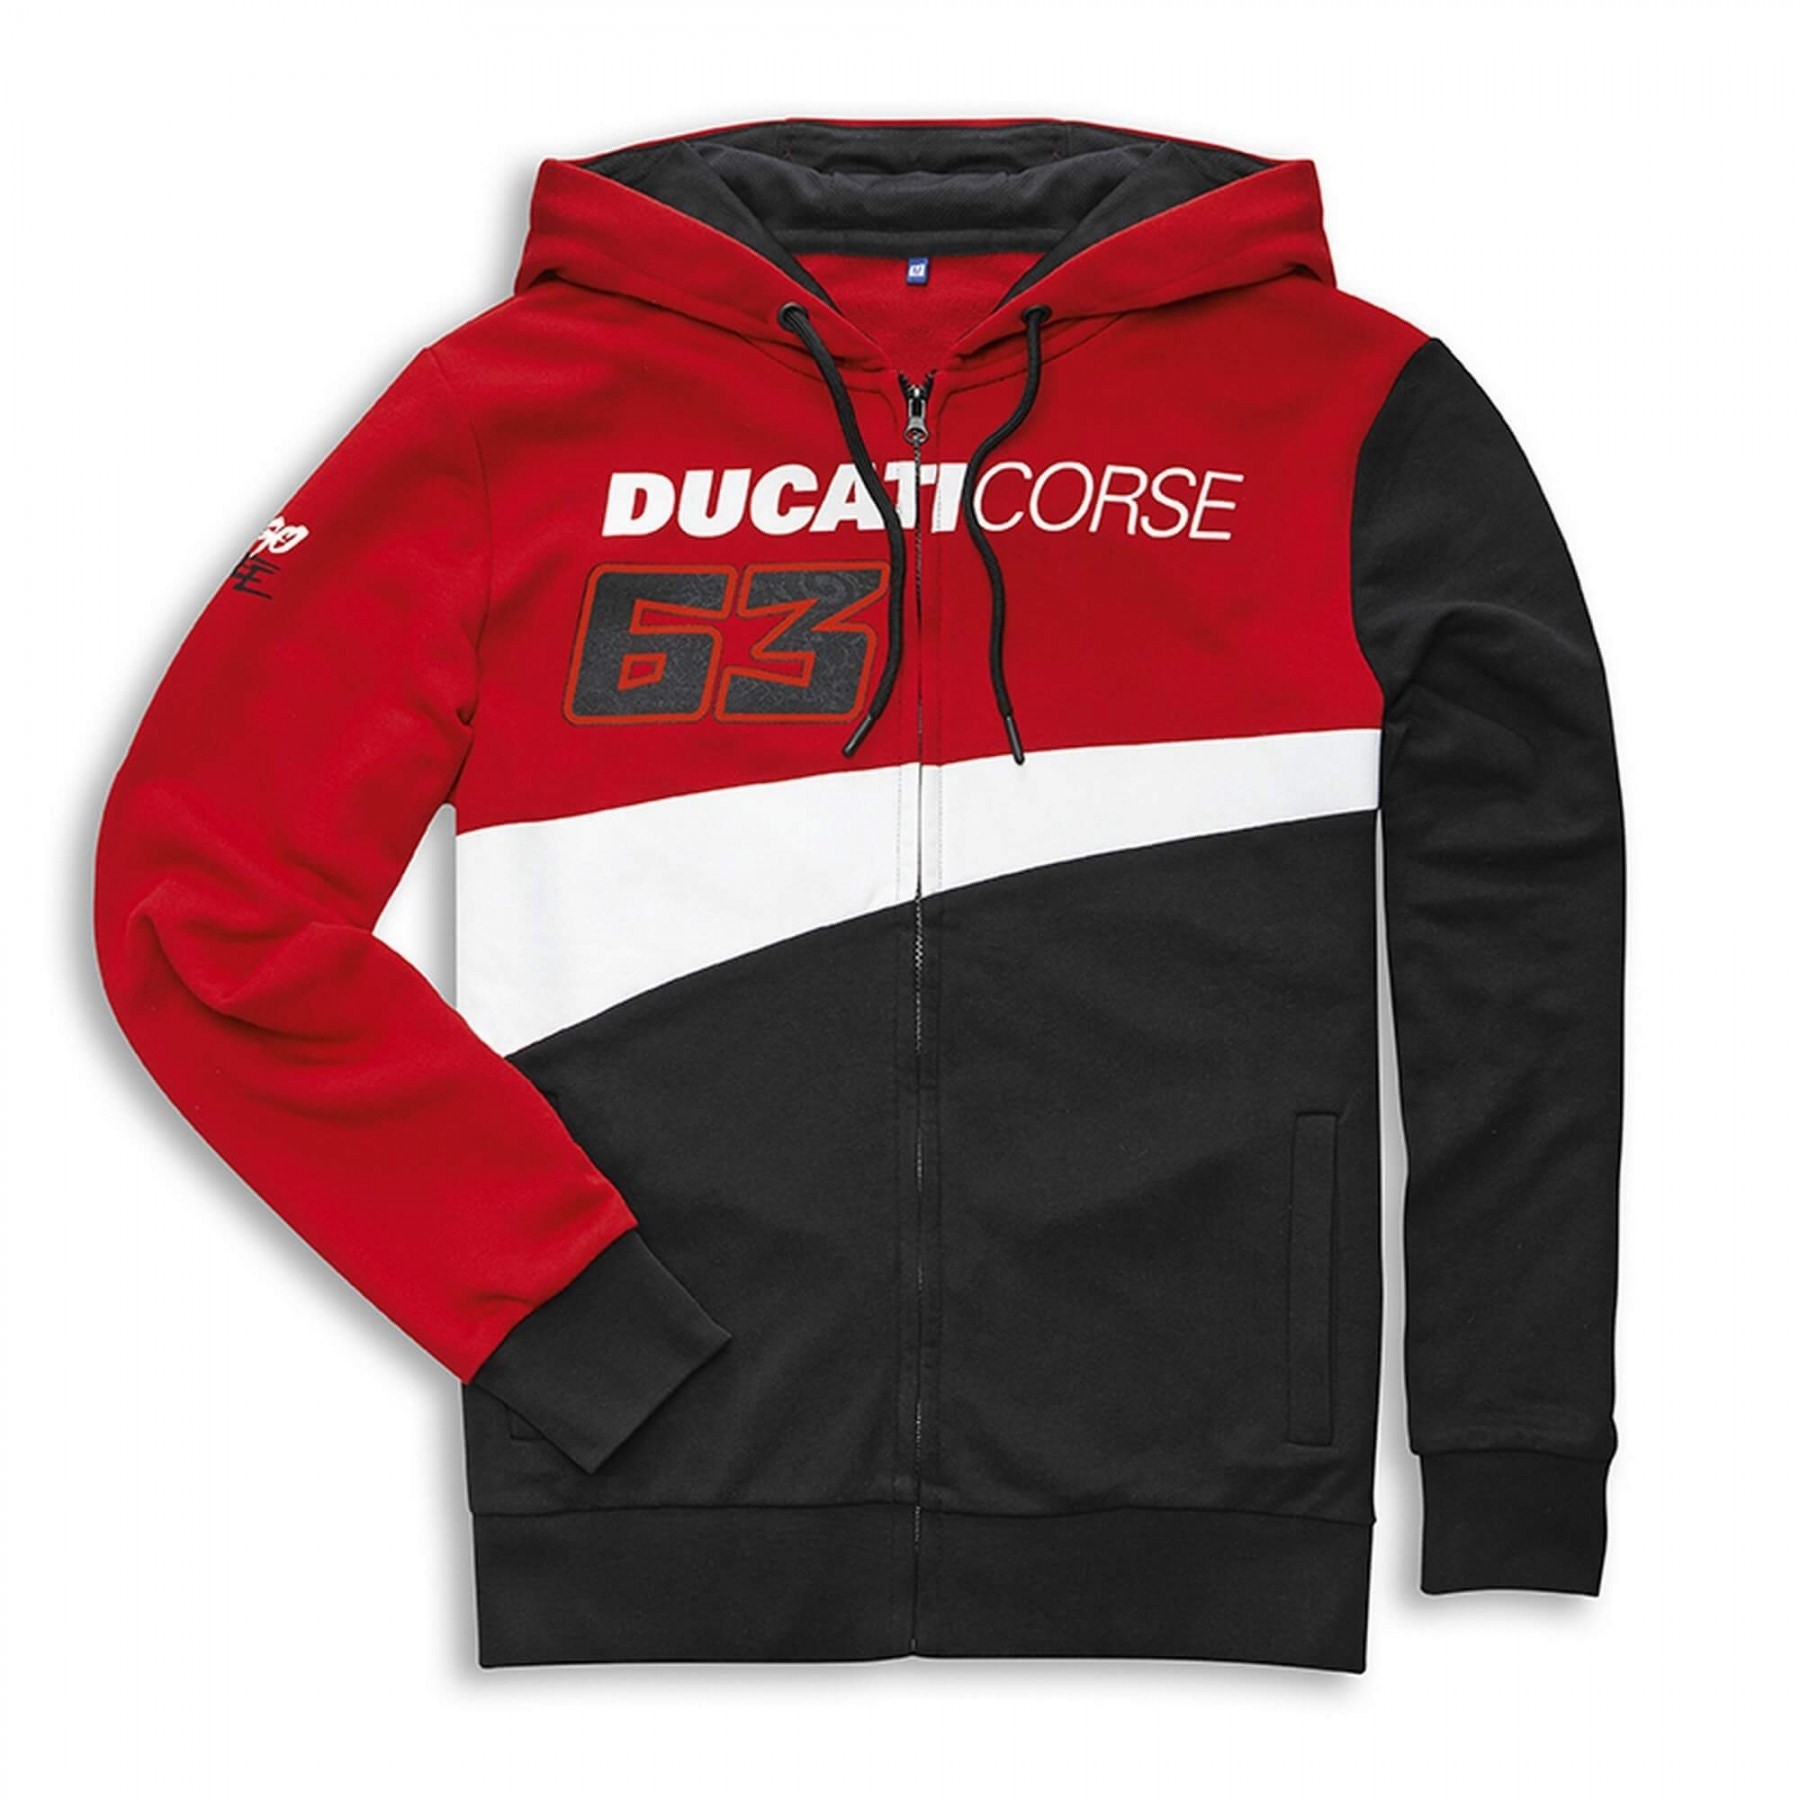 Ducati course 63 Sweater